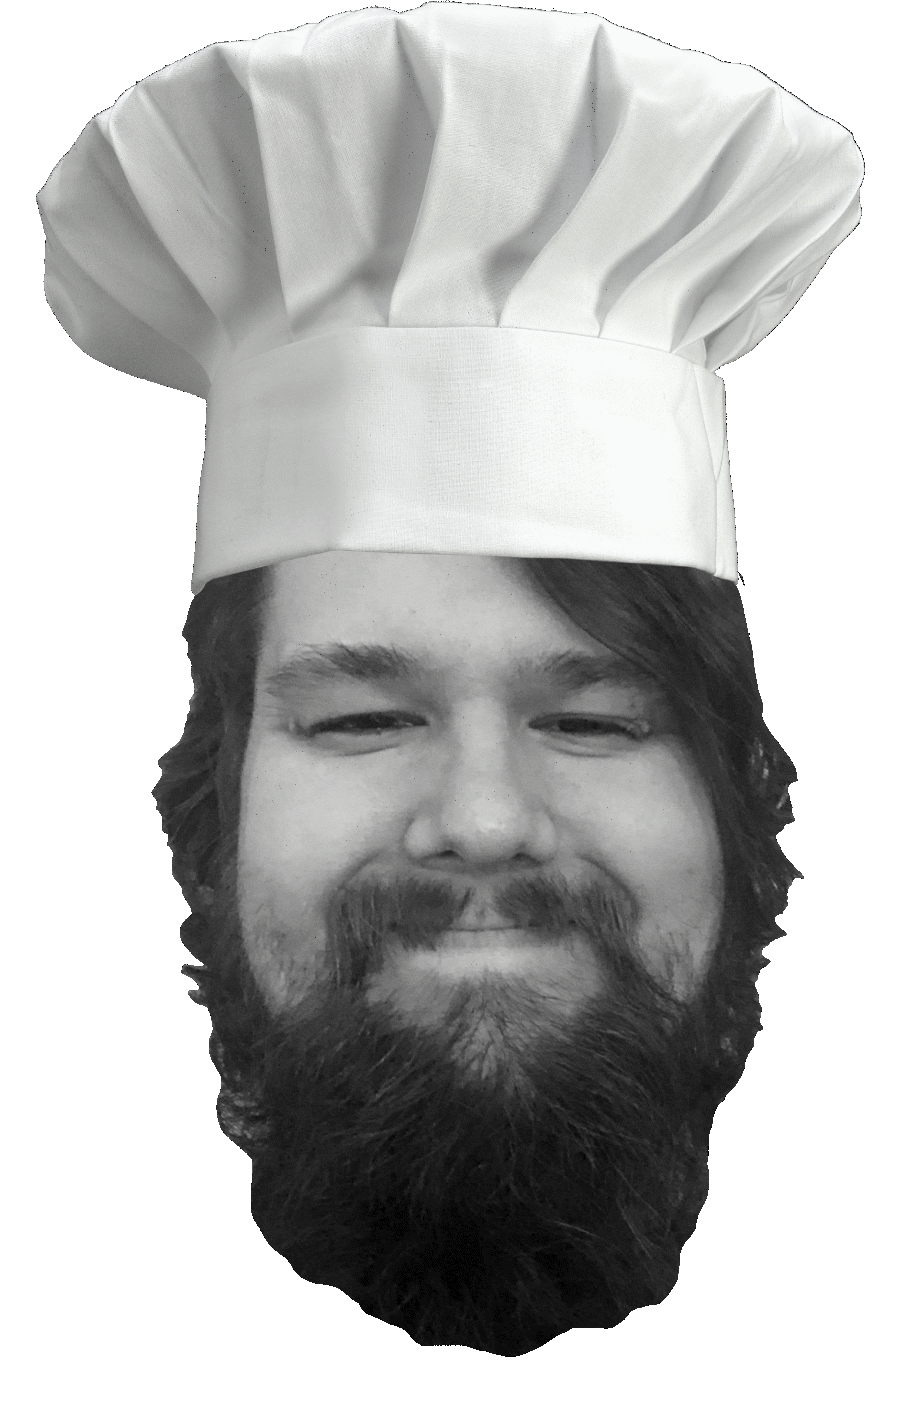 Chef Cody